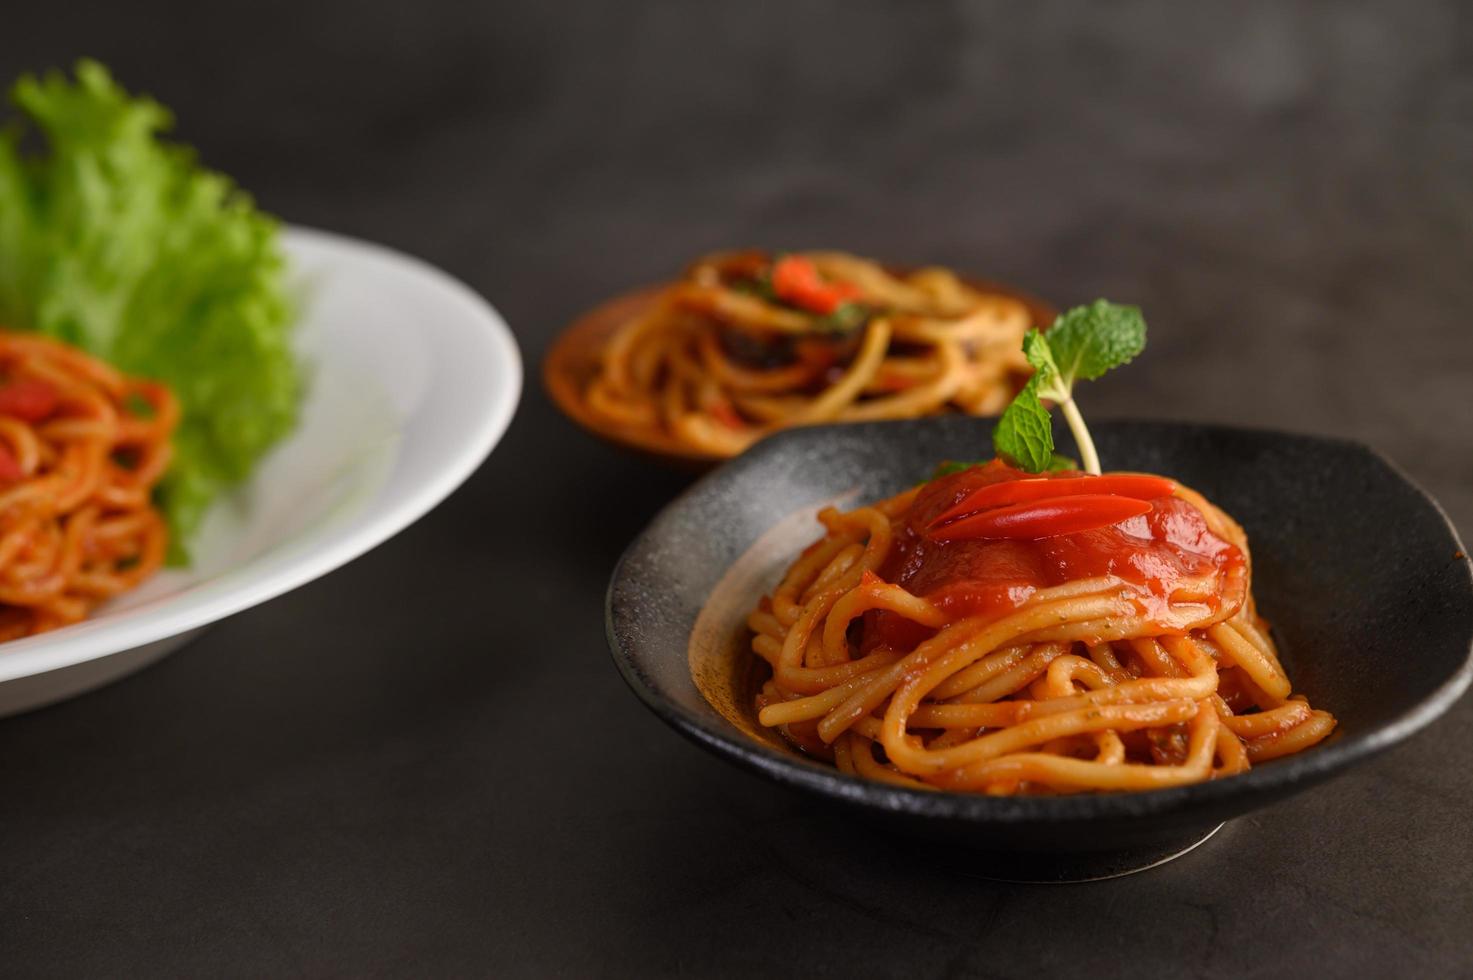 italienische Spaghetti-Nudeln mit Tomatensauce foto